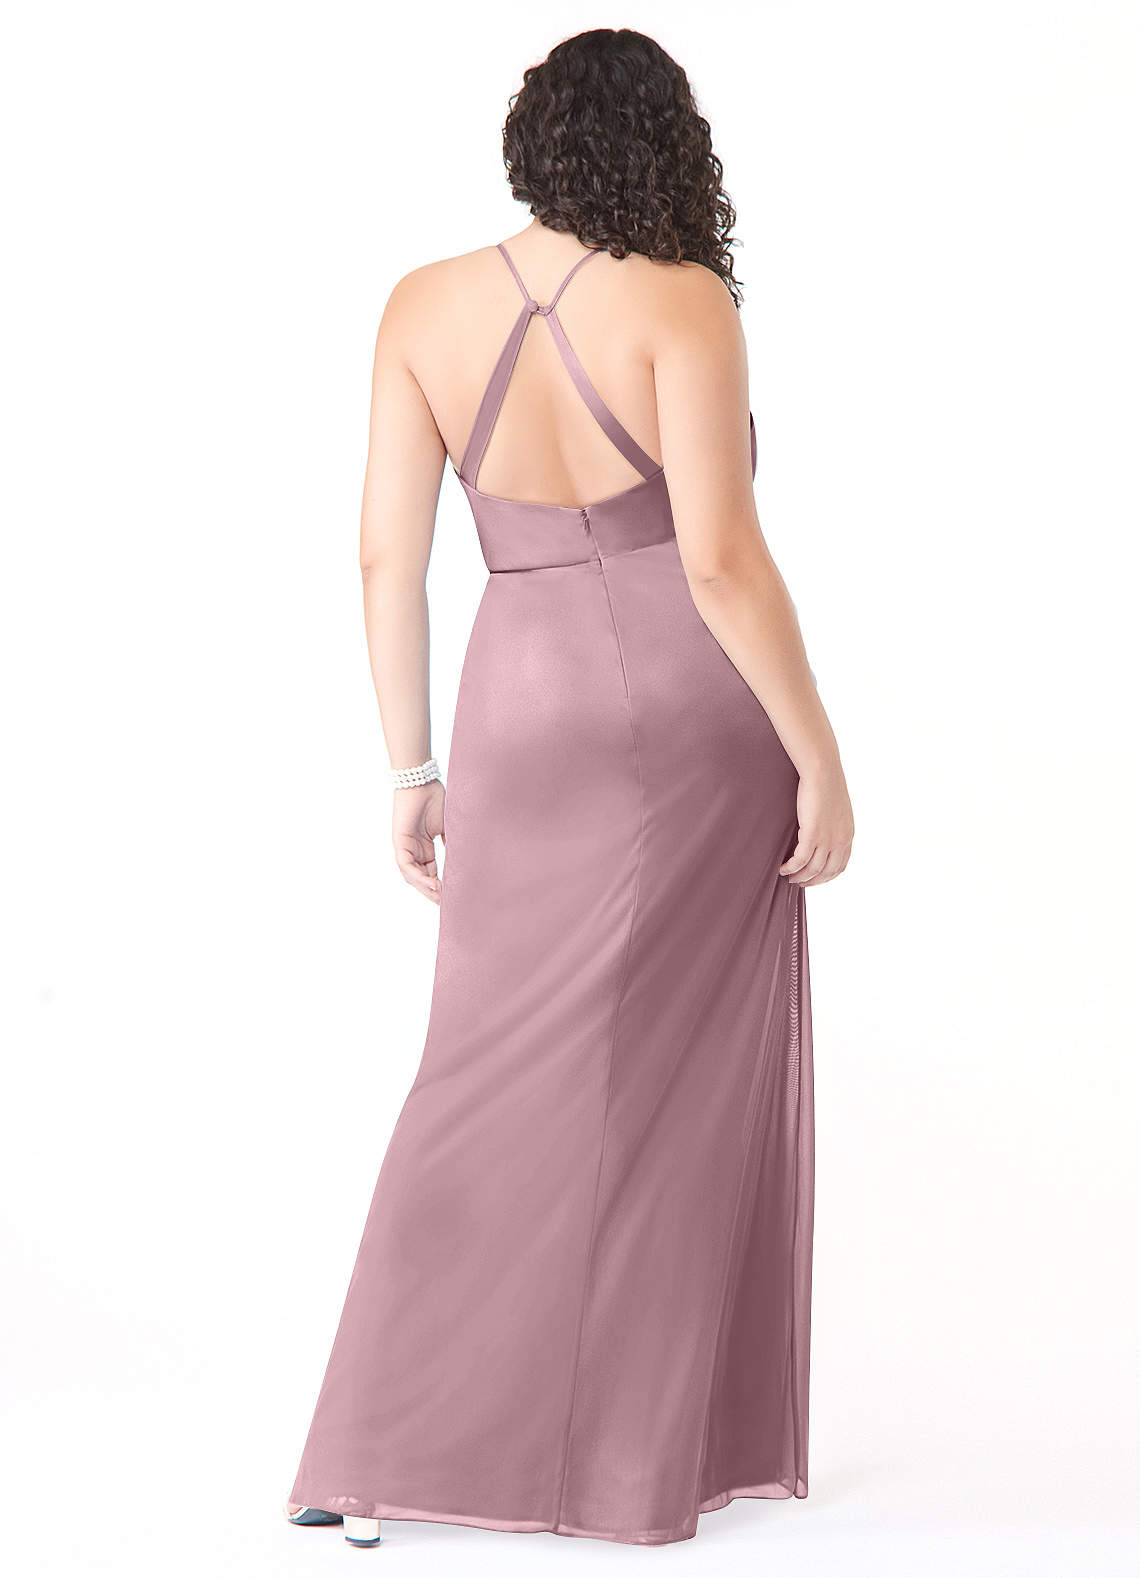 Azazie Kalea Bridesmaid Dresses Mermaid Pleated Mesh Floor-Length Dress image1